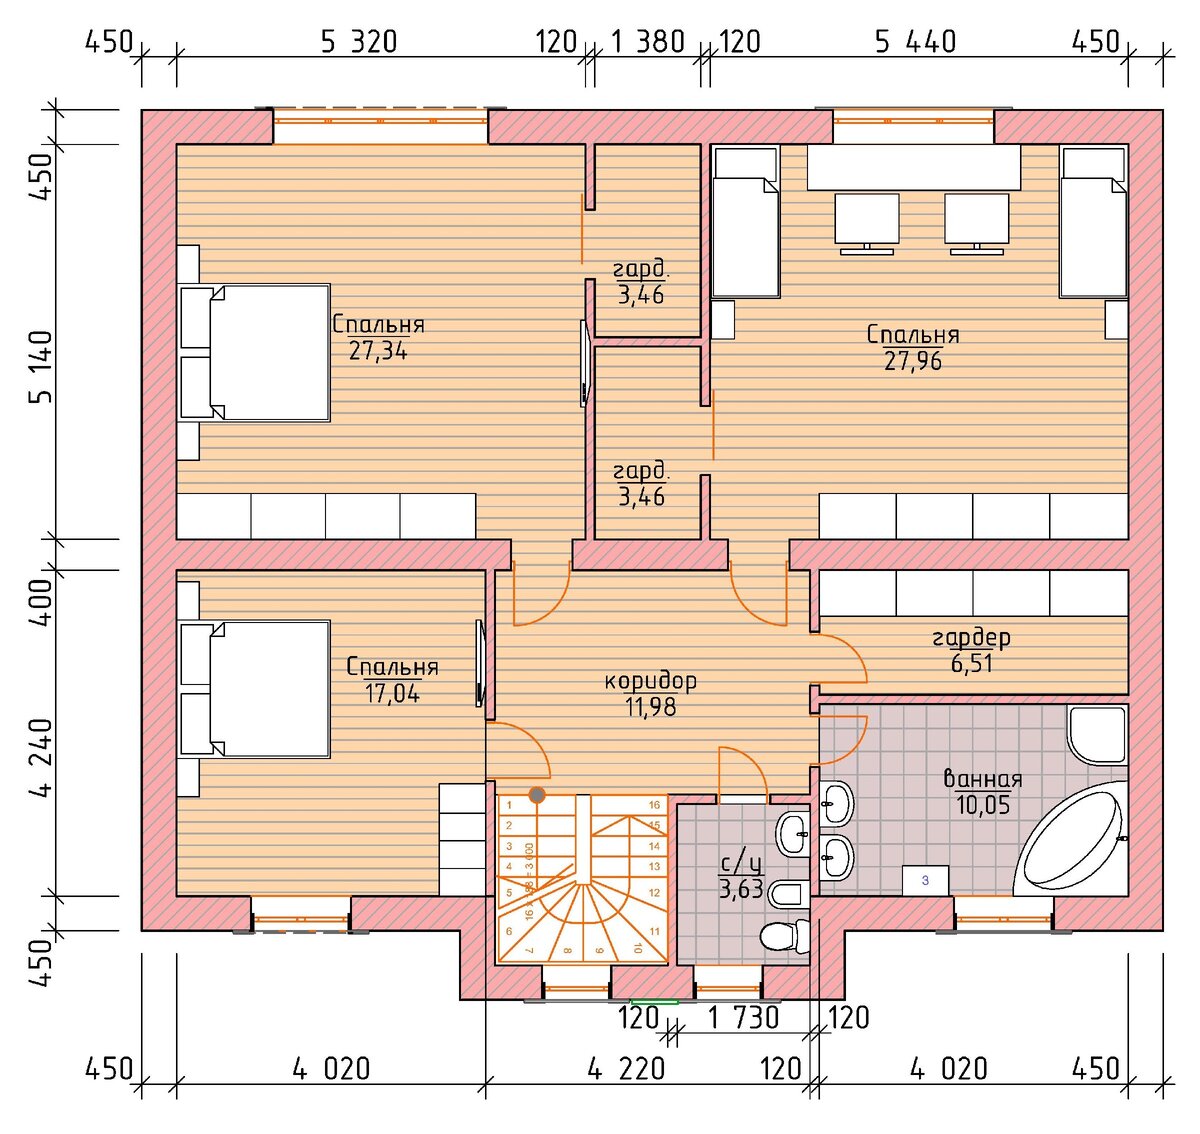 Двухэтажный кирпичный дом 12 х 13 м. площадью 230 м² (планы + фасады с подробными размерами) ??